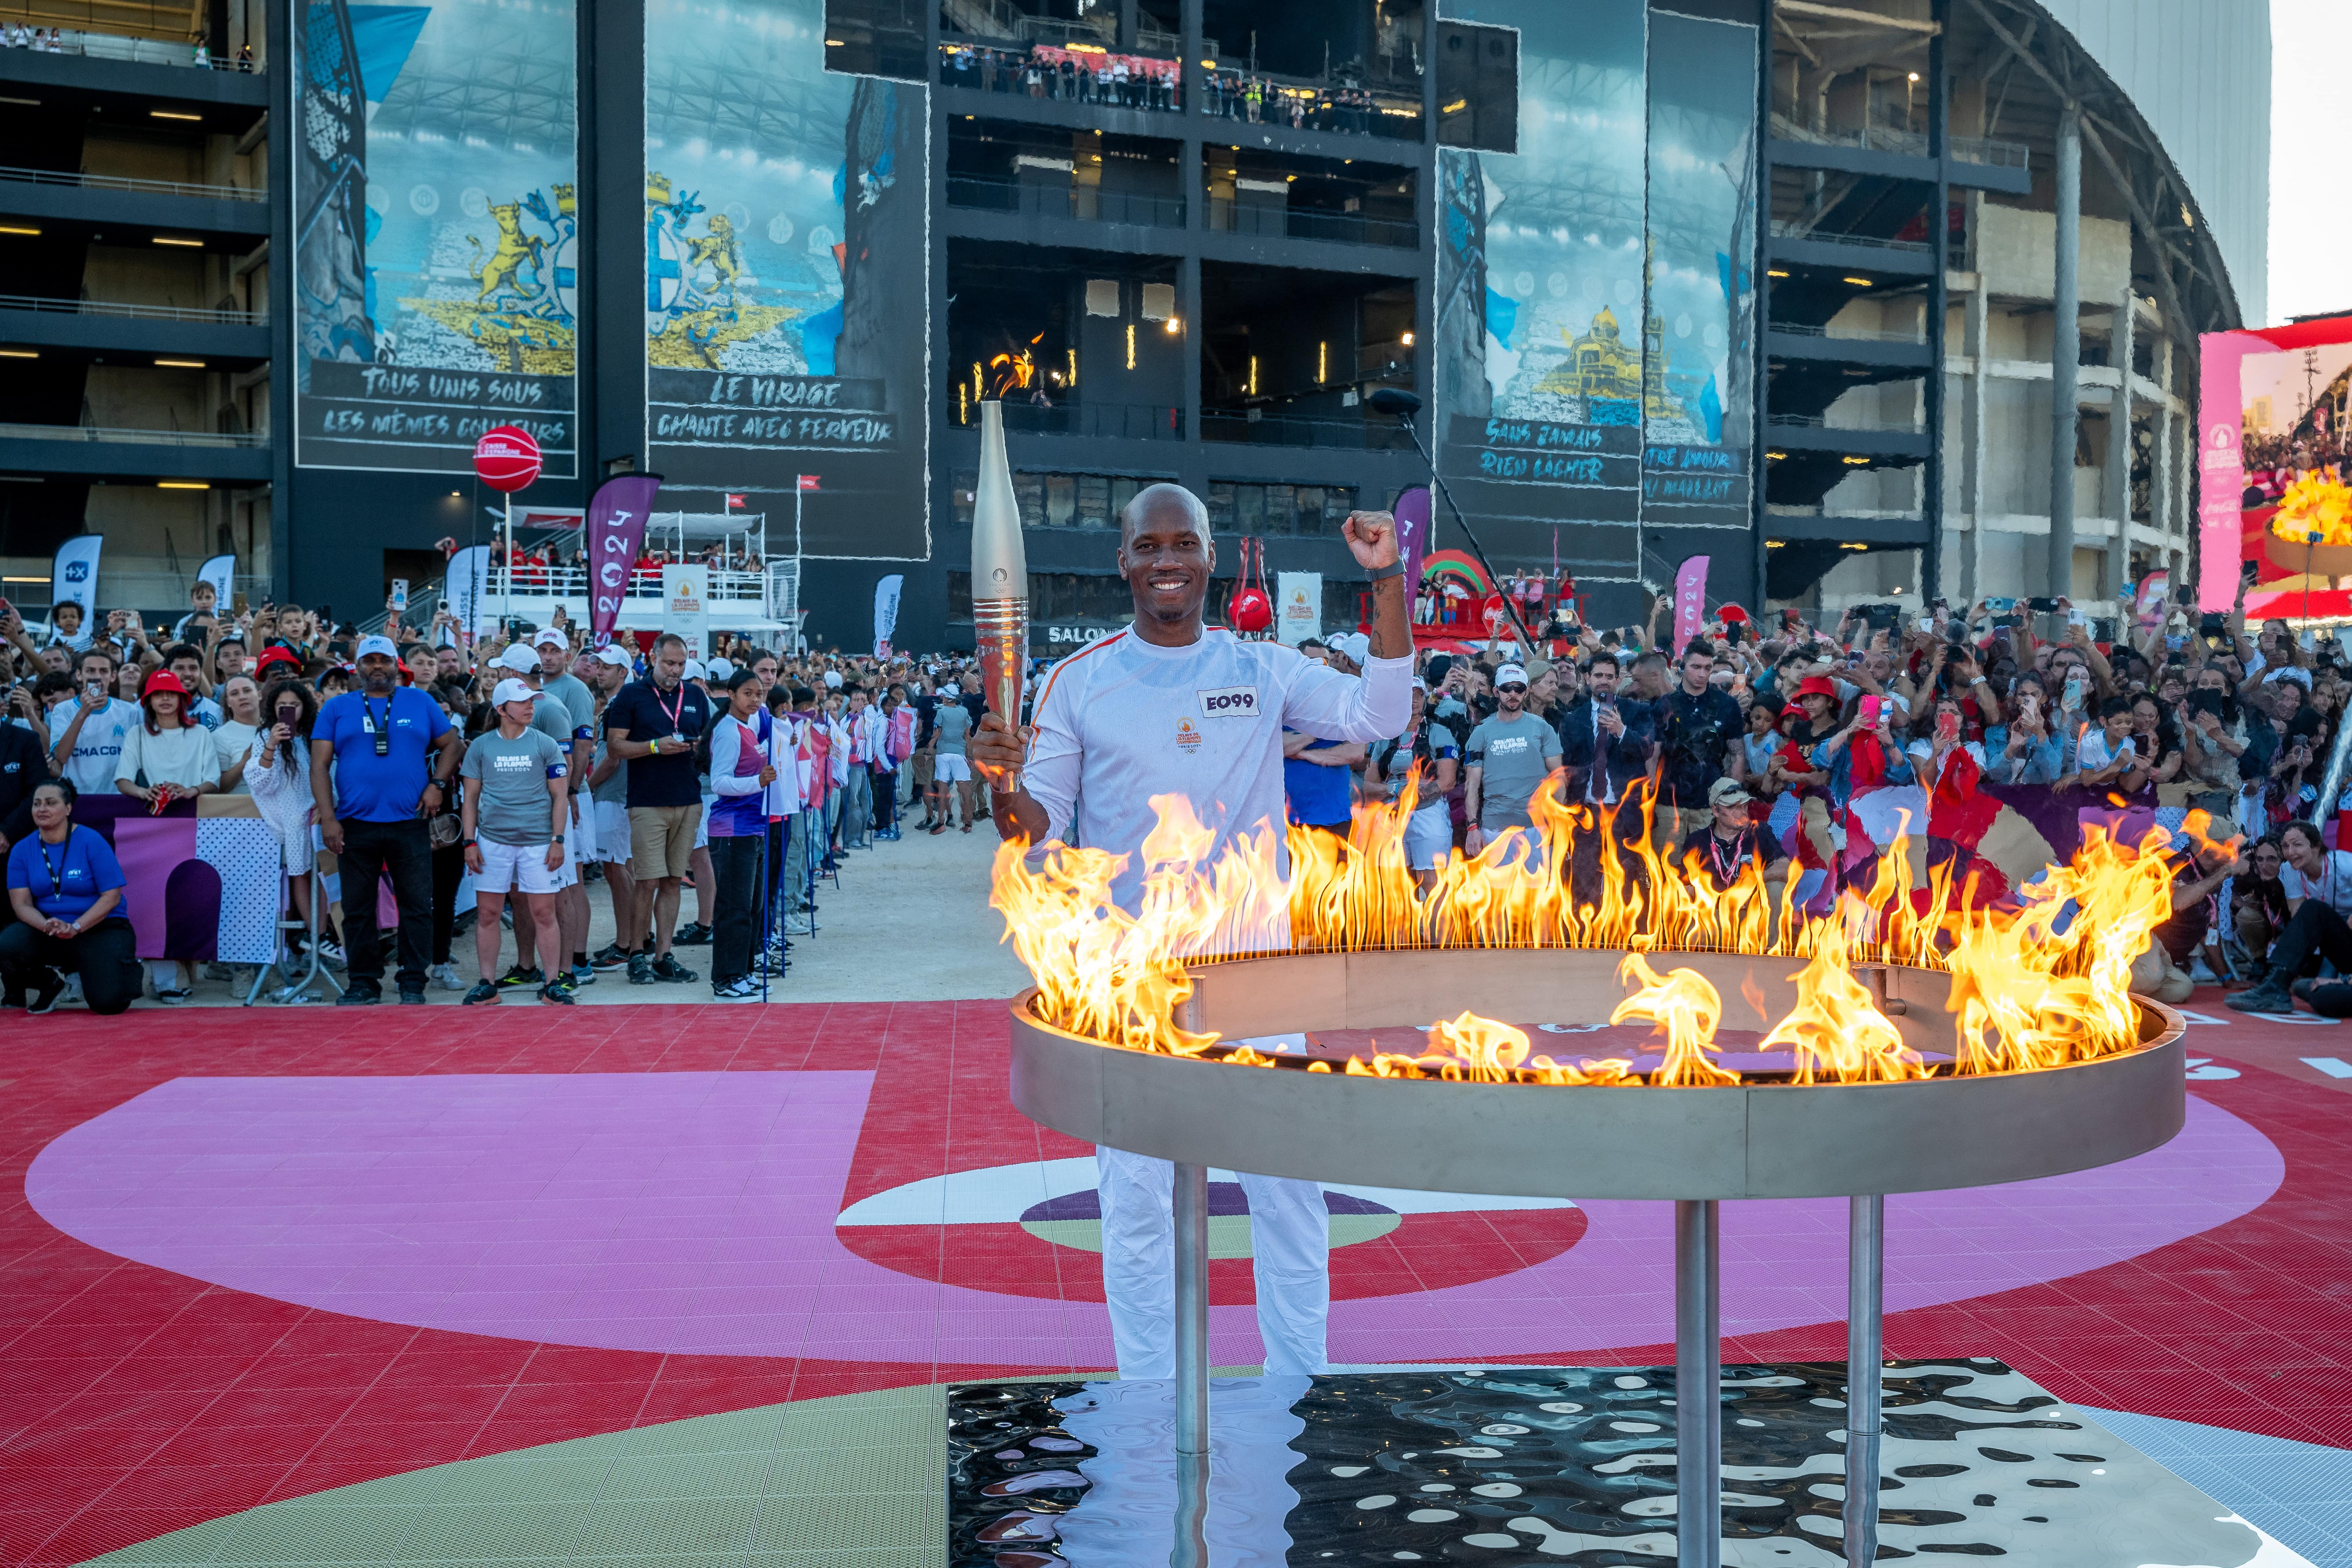     L’arrivée de la flamme olympique en Guadeloupe se prépare activement

